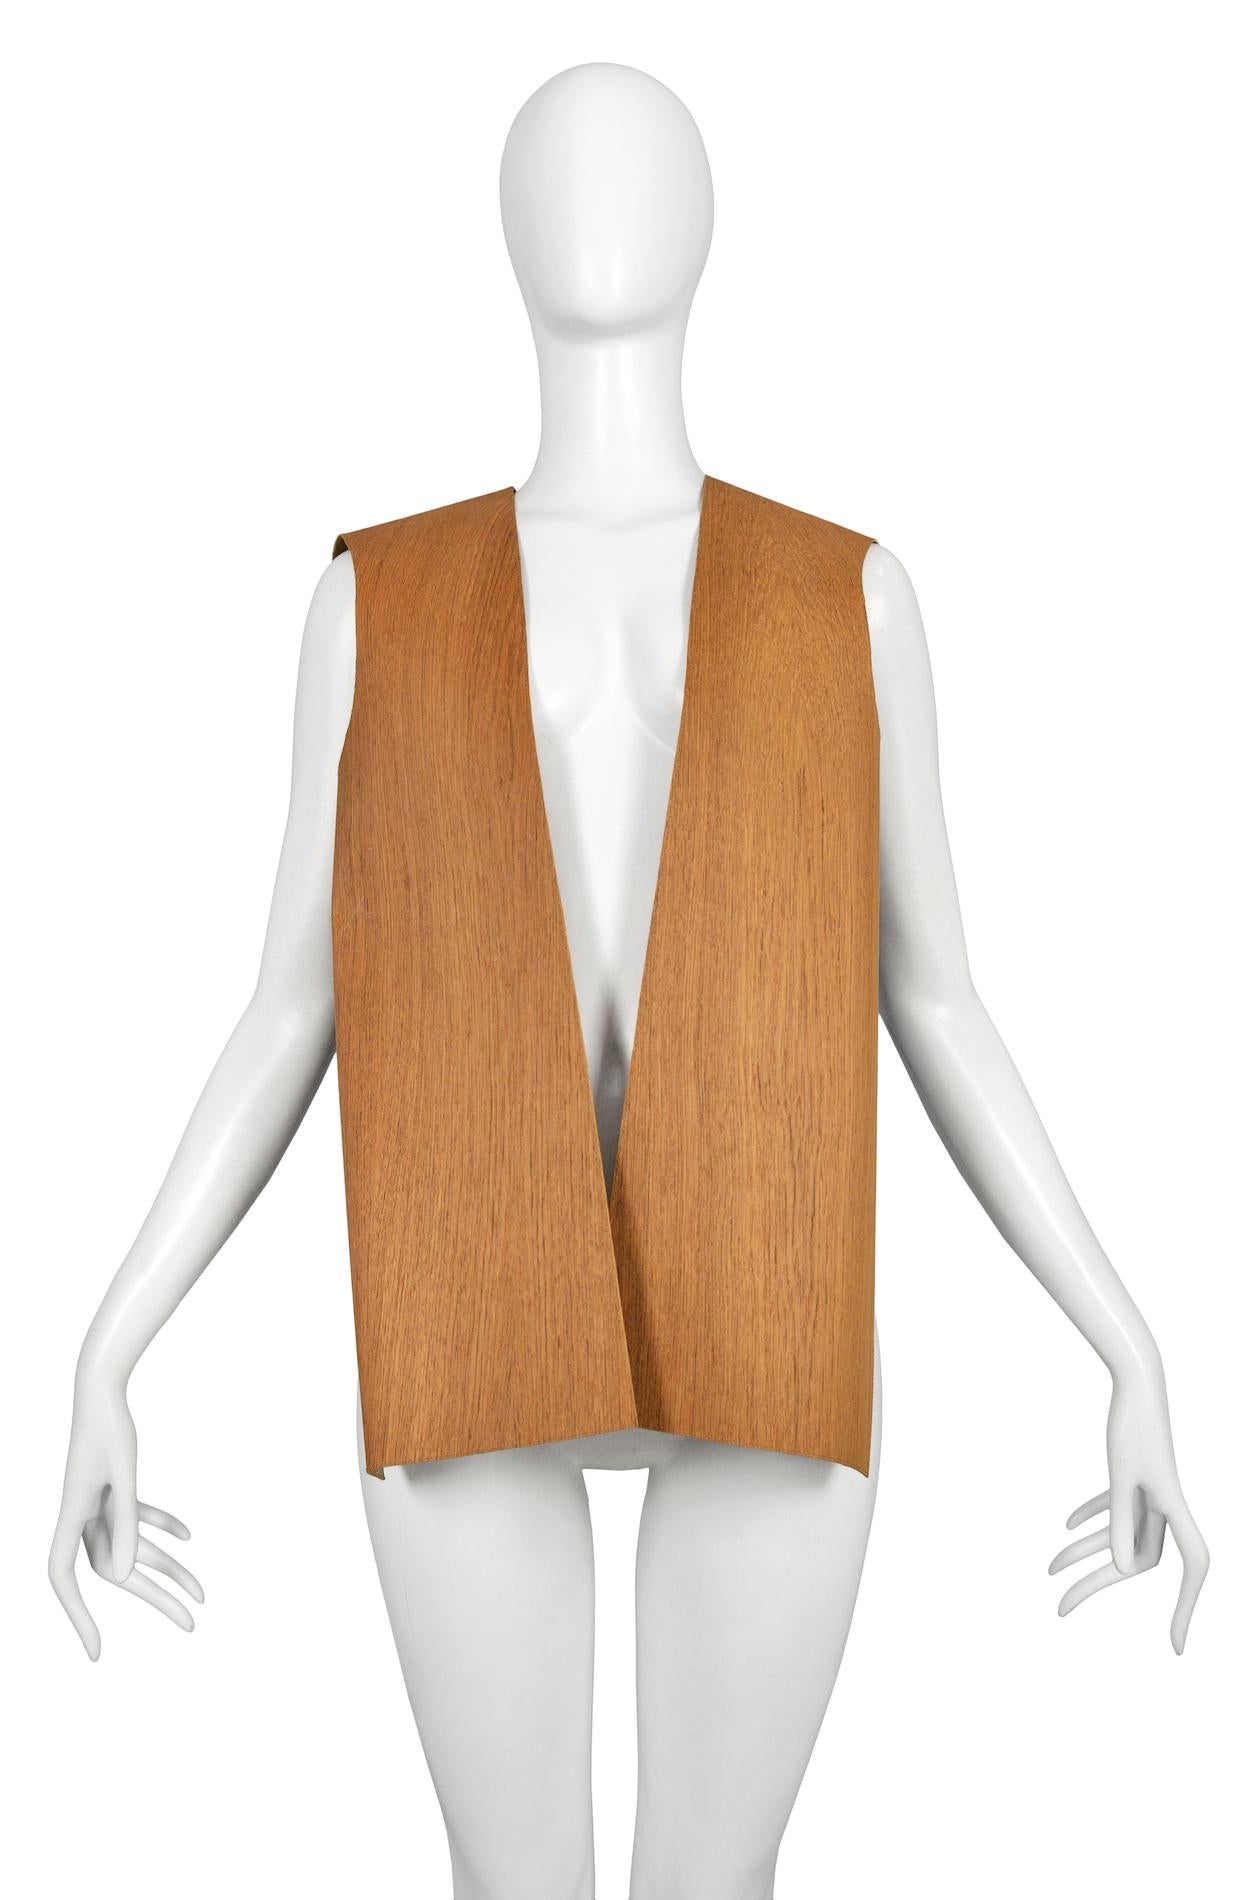 Maison Martin Margiela Artisanal Wood Vest 2011 For Sale 1